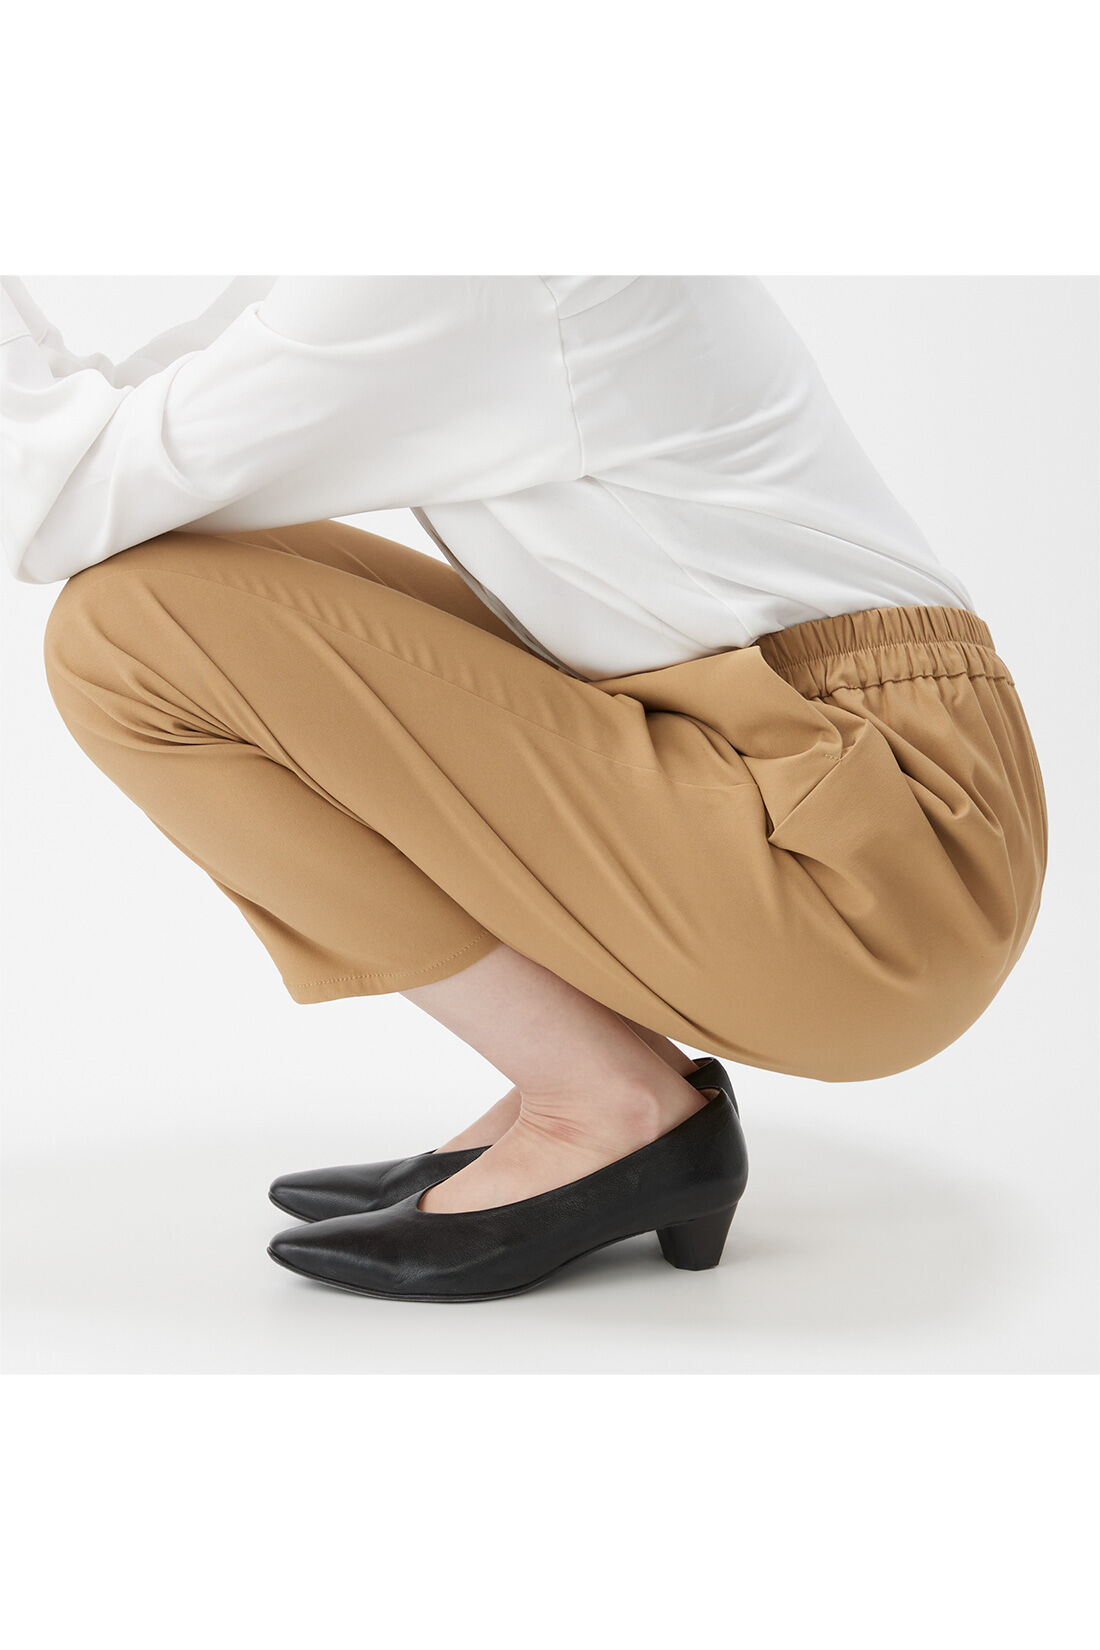 IEDIT[イディット]　ぐいっとしなやか サイドタックデザイン ストレッチ布はく素材のエアノビワイドパンツ〈ベージュ〉|しゃがんでも座りっぱなしでも快適で、ひざやおしりも伸びやからくちん。背中も見えにくくて安心！